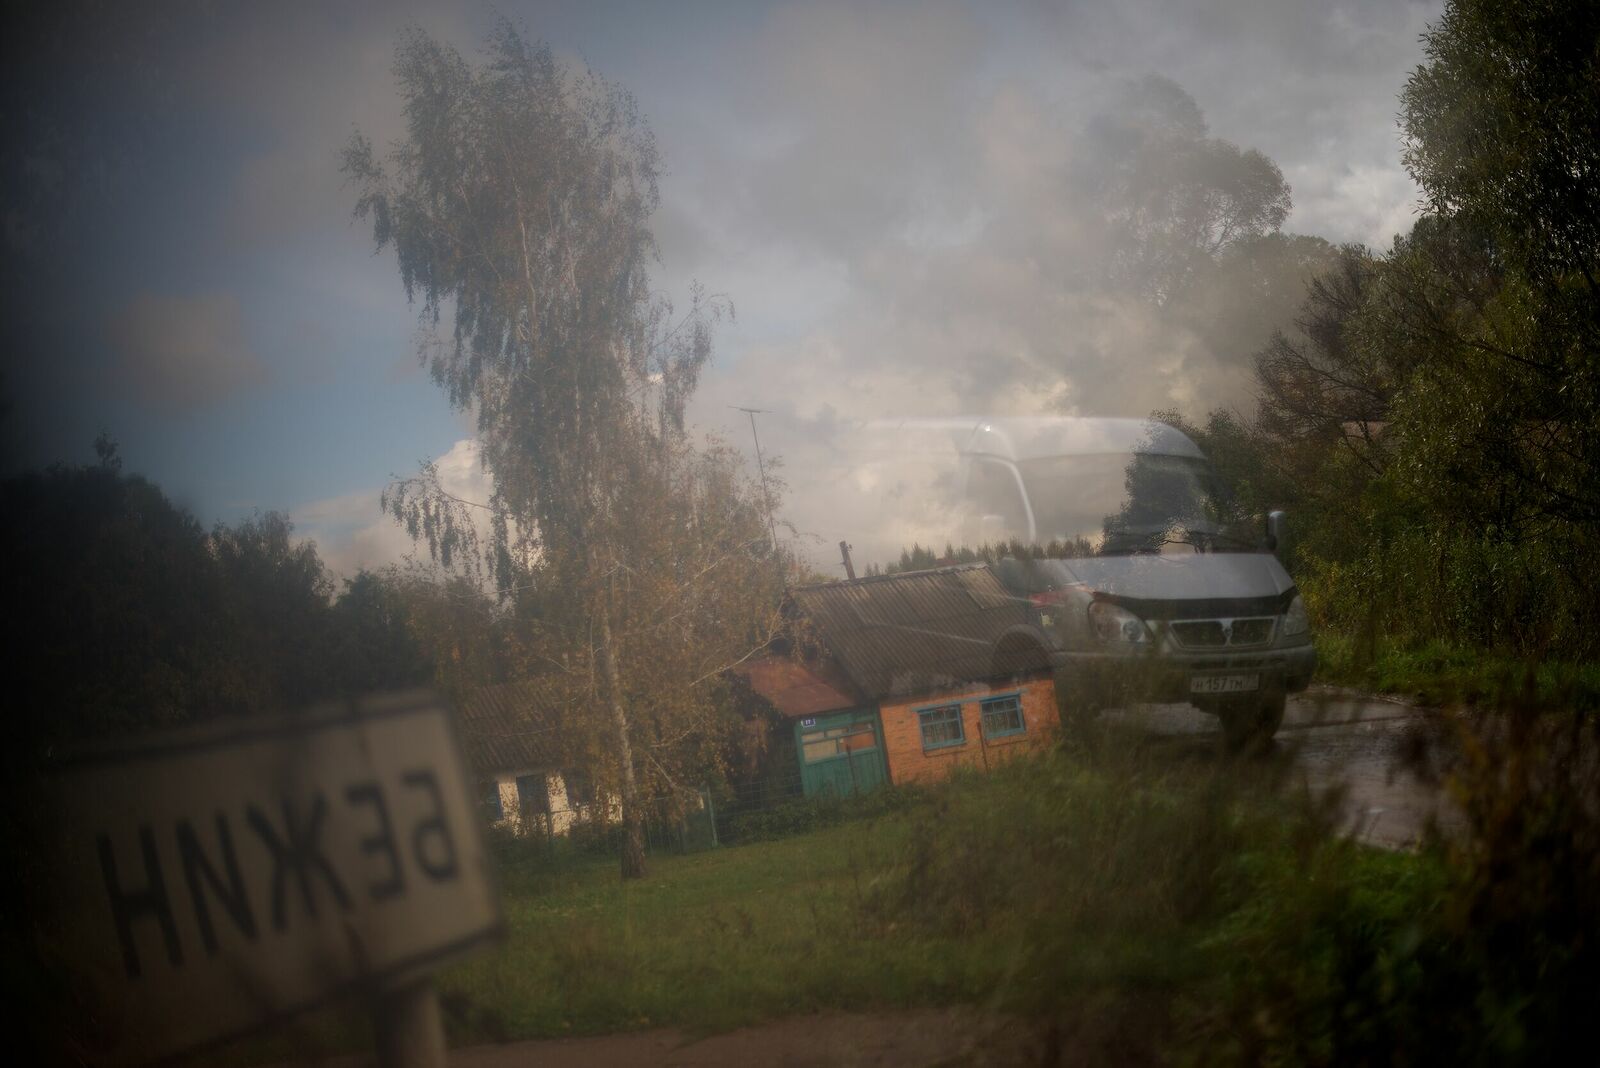 Деревня Бежин Луг, хорошо известна благодаря одноименному рассказу И.С. Тургенева. Русский писатель любил охотиться в этих местах.